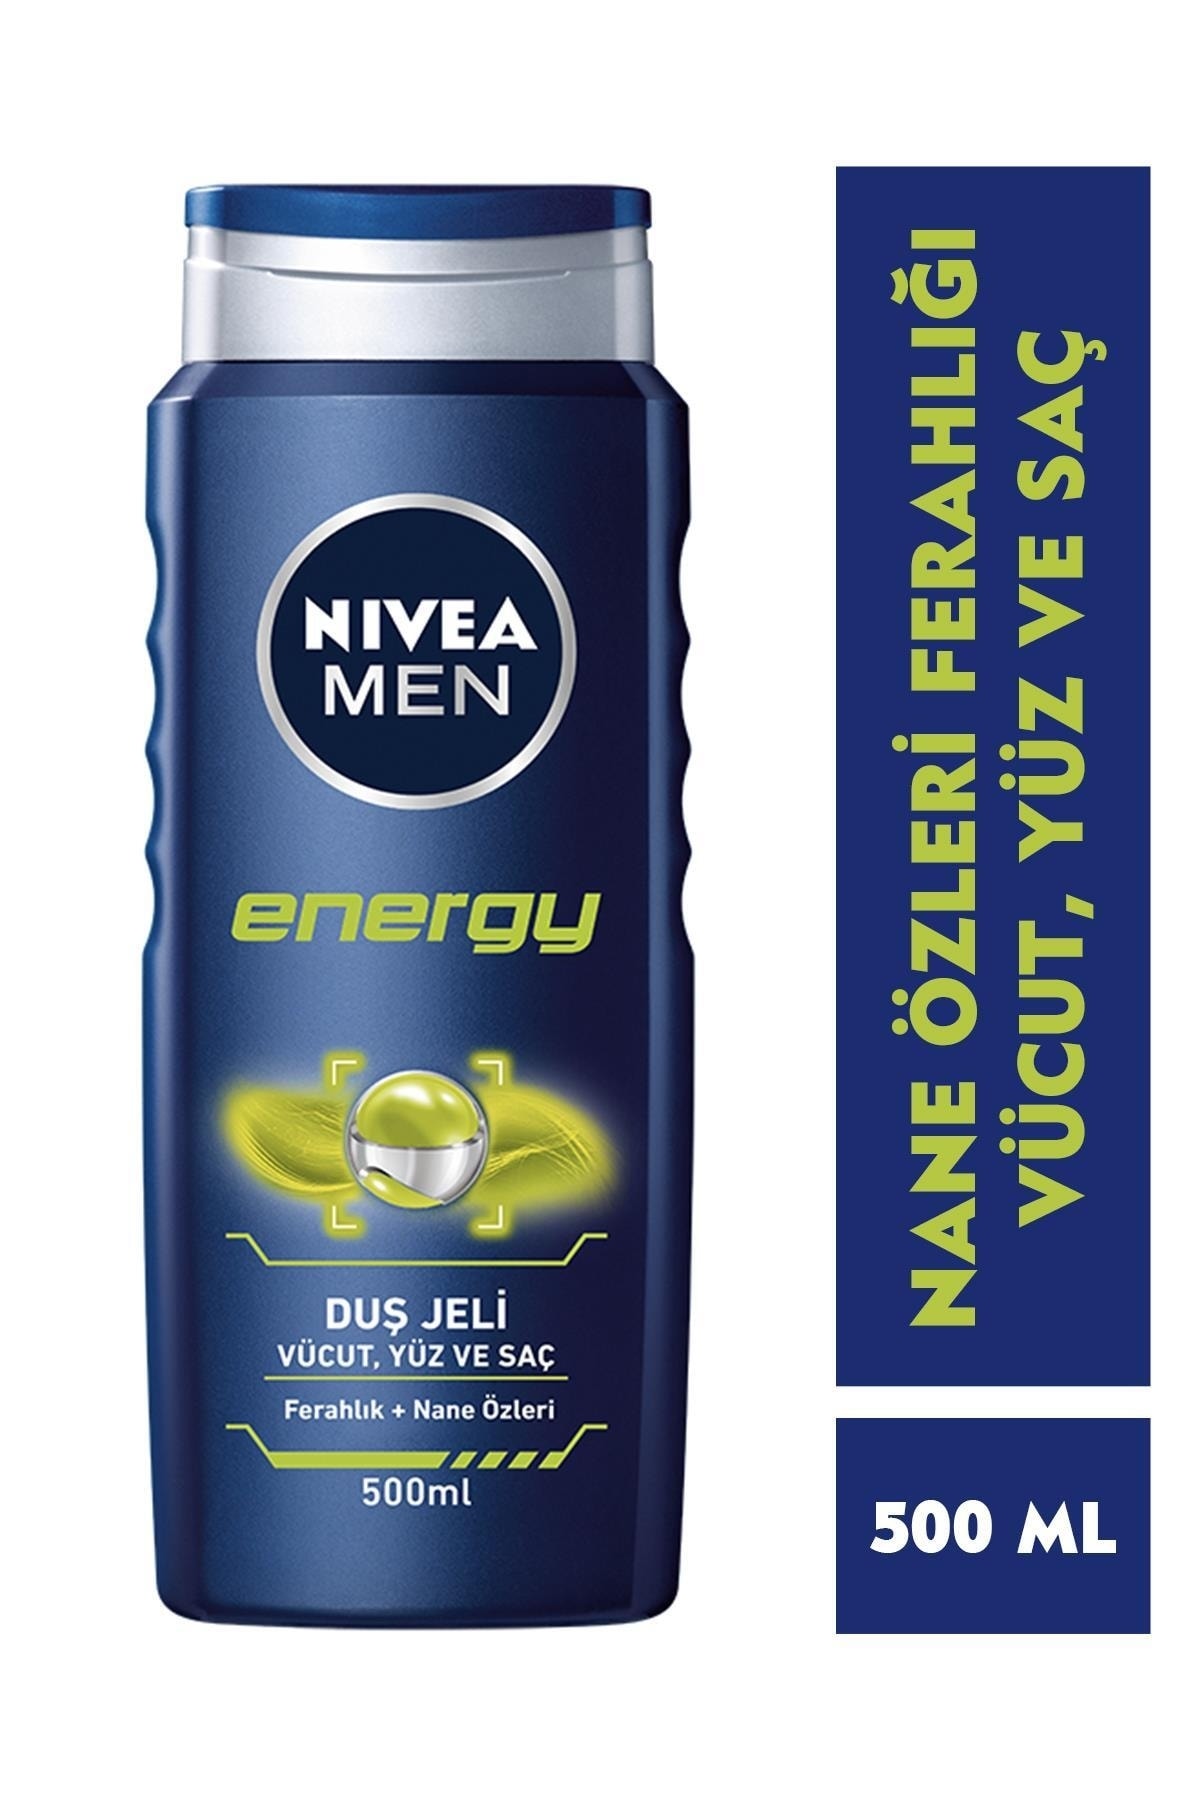 Nivea Men Energy Duş Jeli 500 Ml, 3'ü 1 Arada Komple Bakım, Vücut, Saç Ve Yüz Için